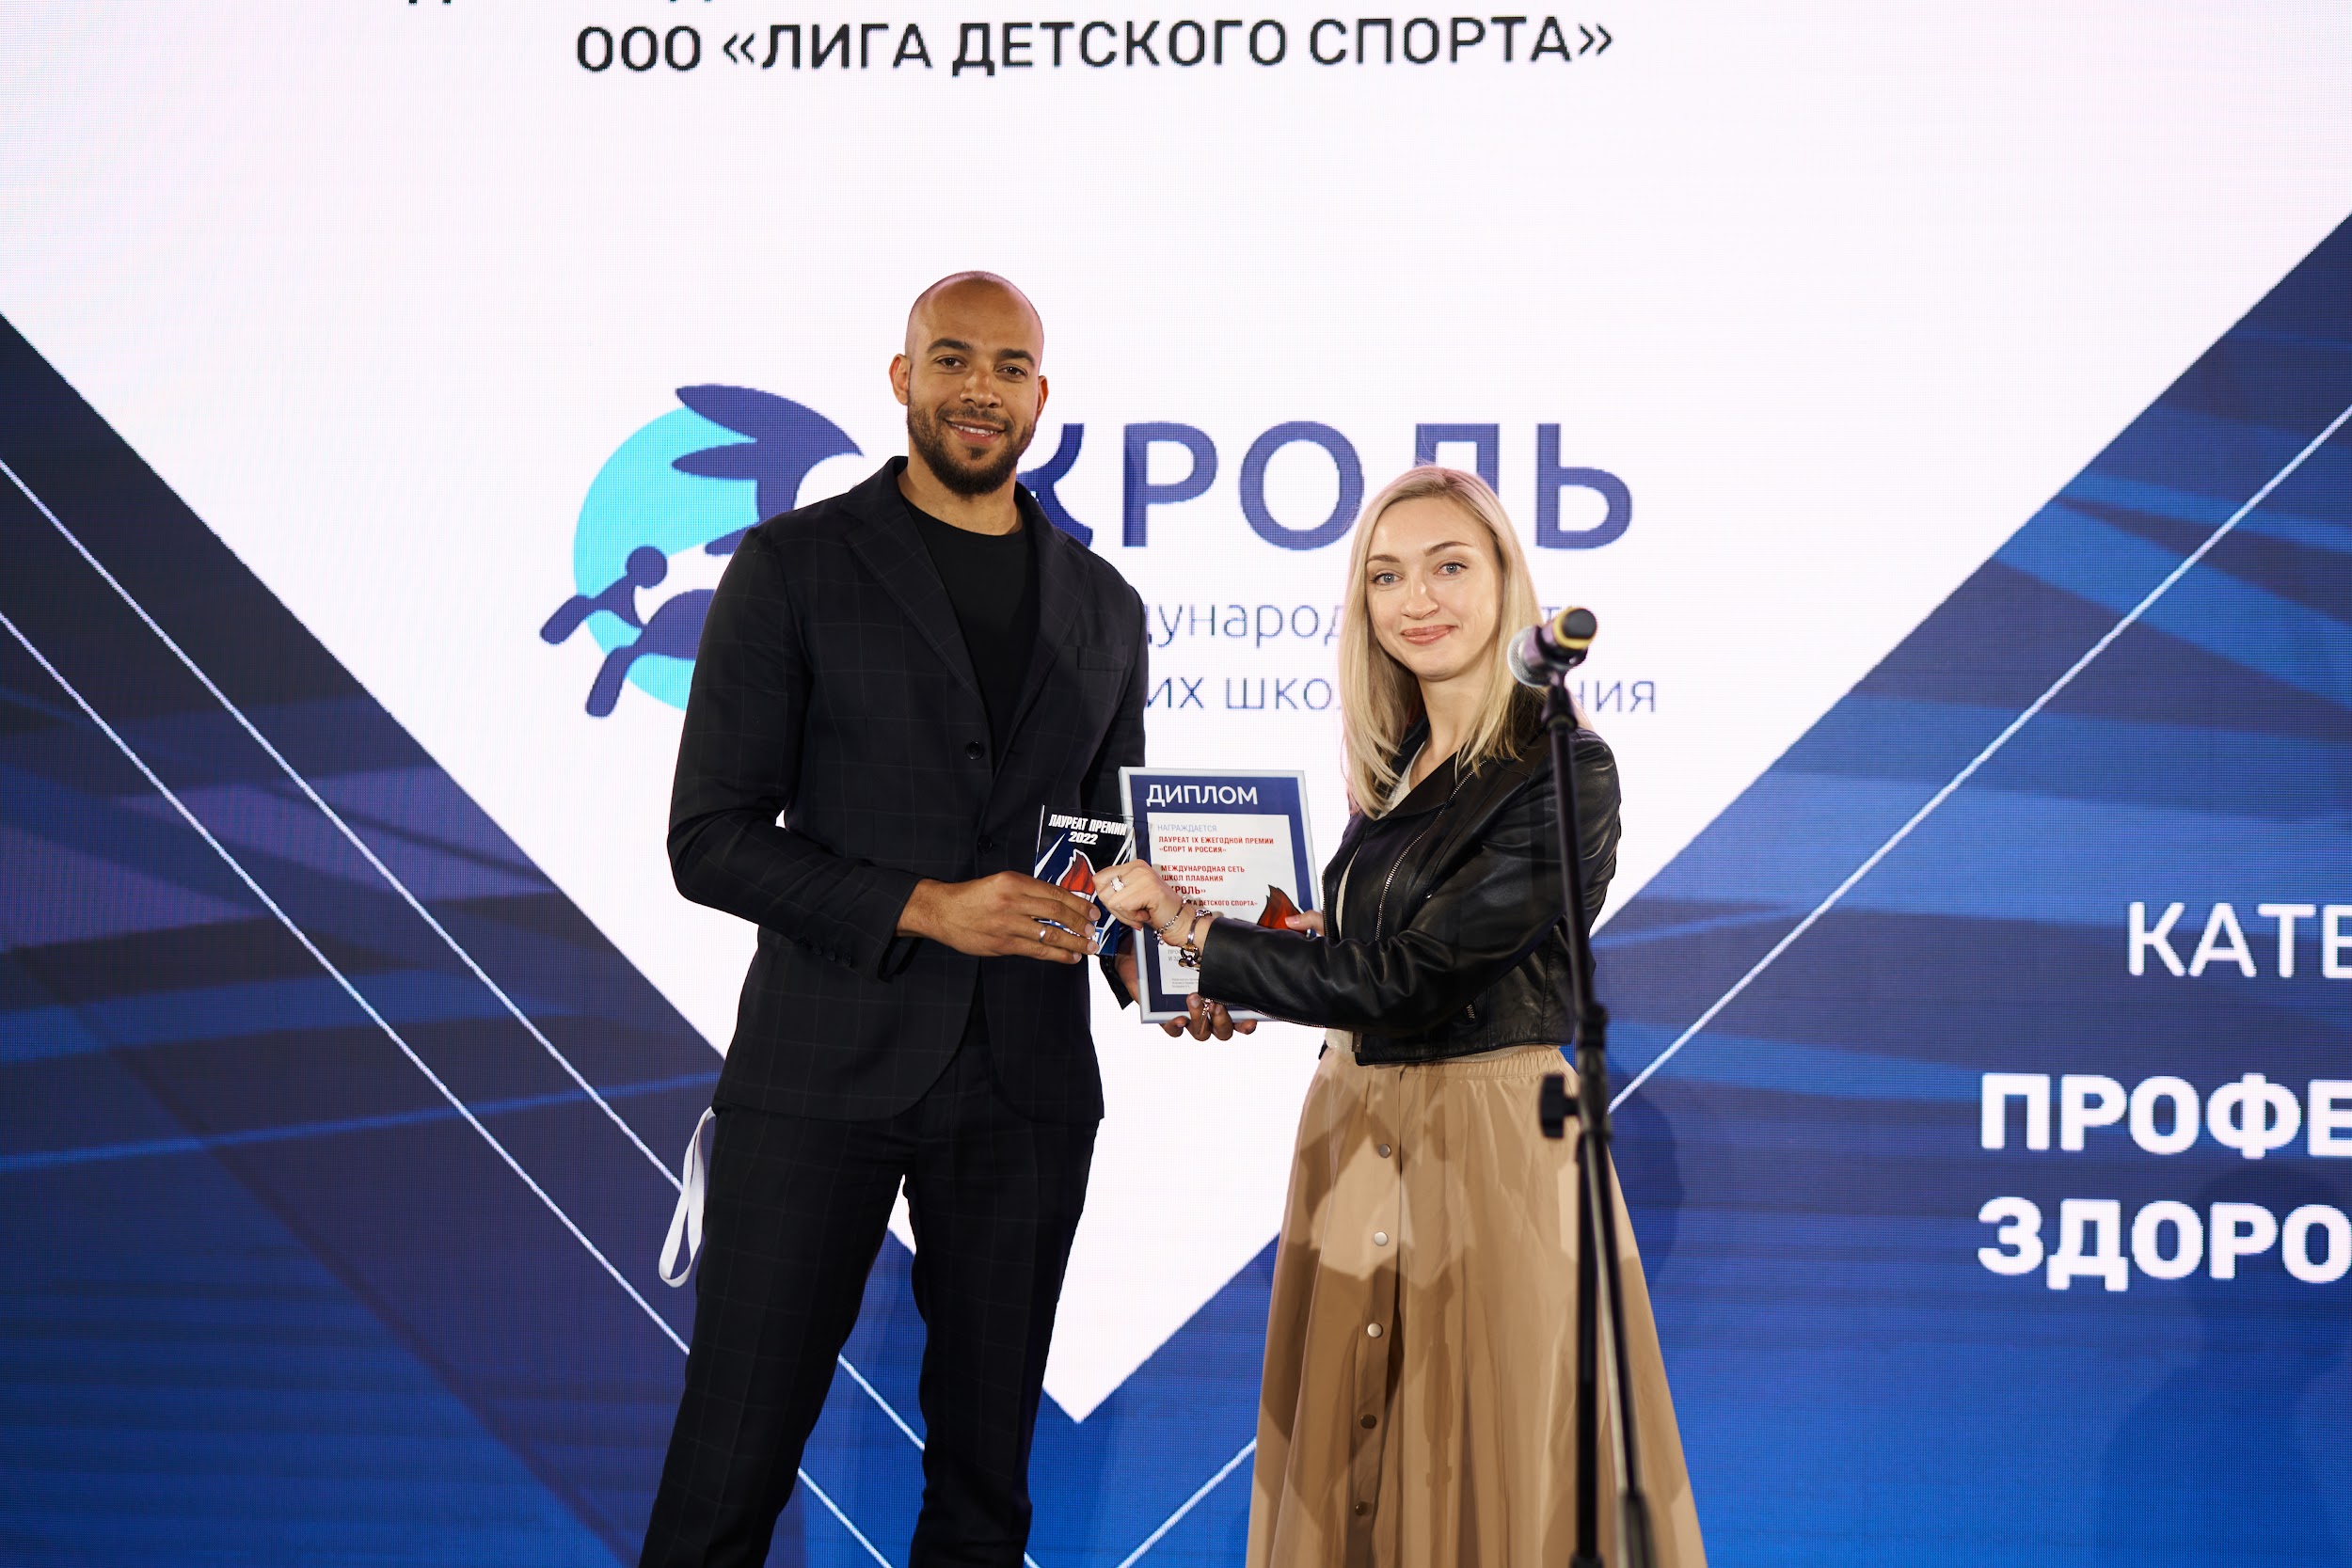 Награждение премией и форум «Спорт и Россия» пройдут в июне в Московской области. Открыт прием заявок